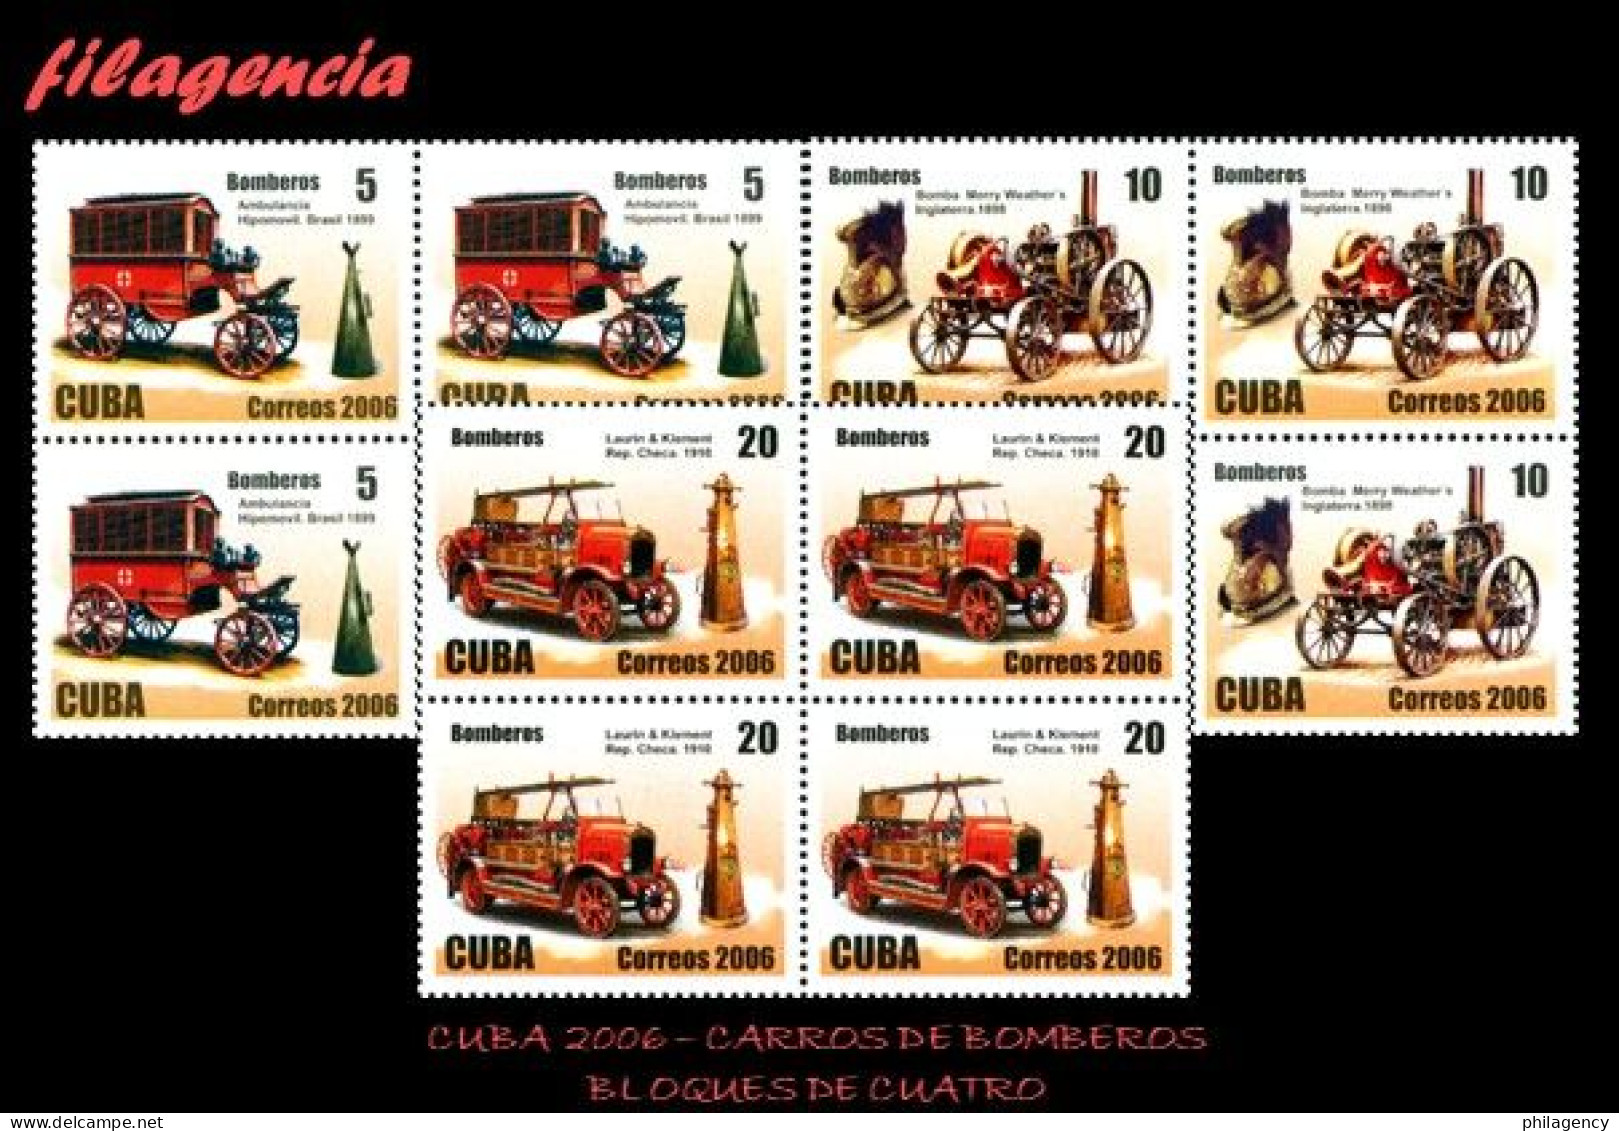 CUBA. BLOQUES DE CUATRO. 2006-30 ANTIGUOS CARROS DE BOMBEROS - Unused Stamps